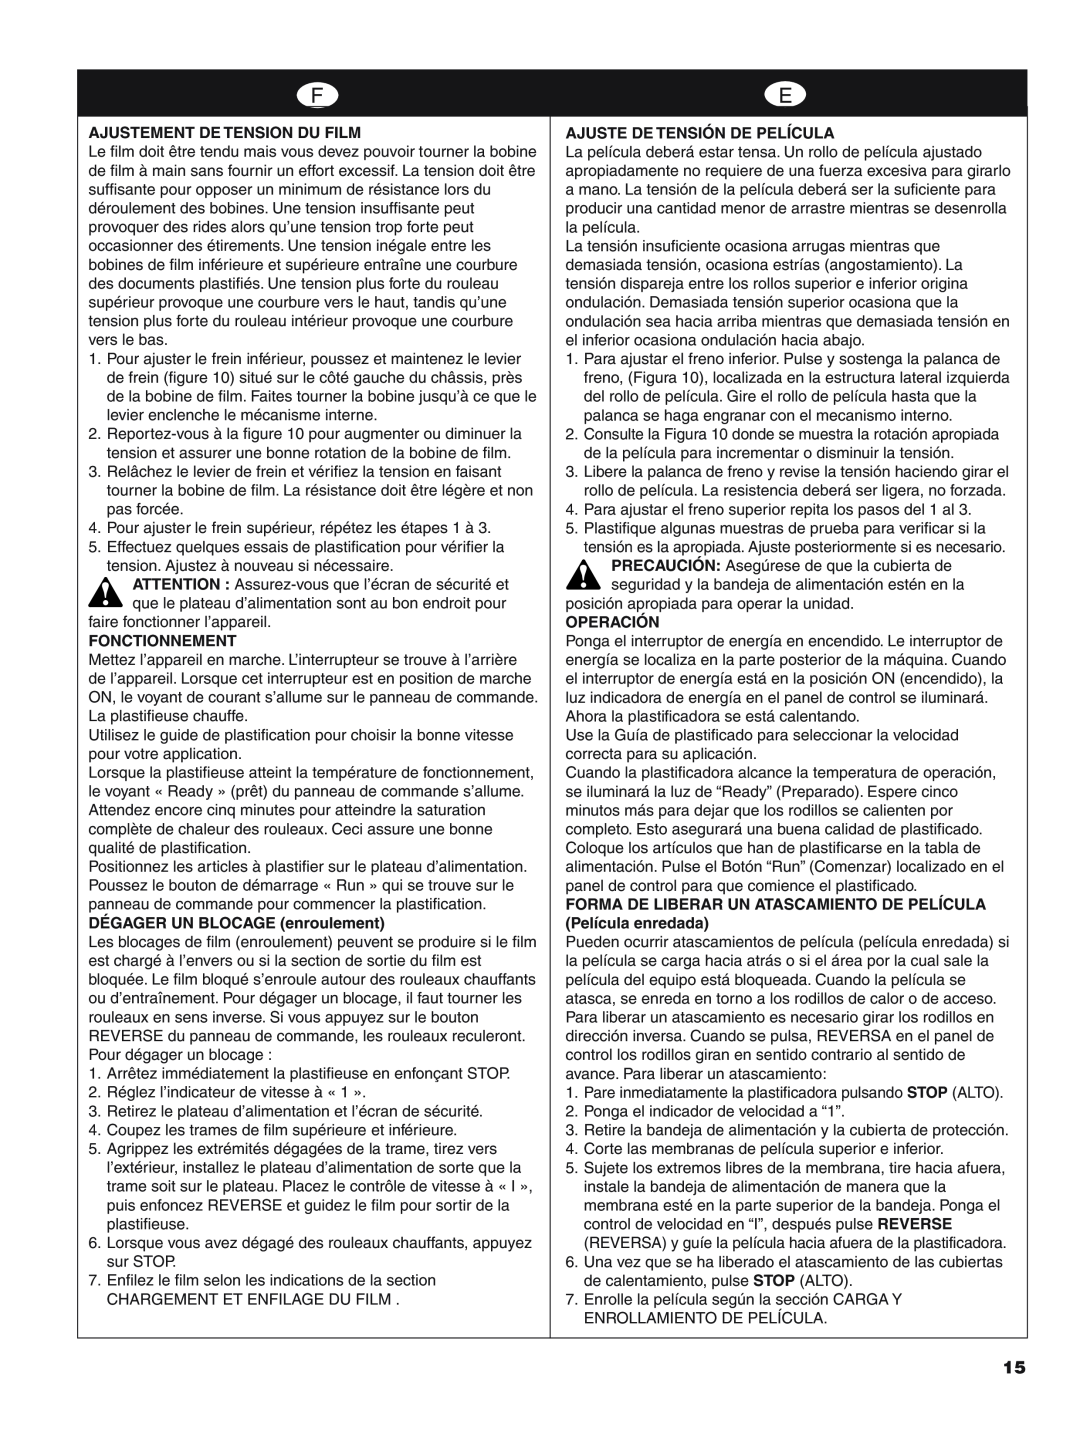 GBC H800 PRO-R manual Ajustement De Tension Du Film, Fonctionnement, DÉGAGER UN BLOCAGE enroulement, Operación 